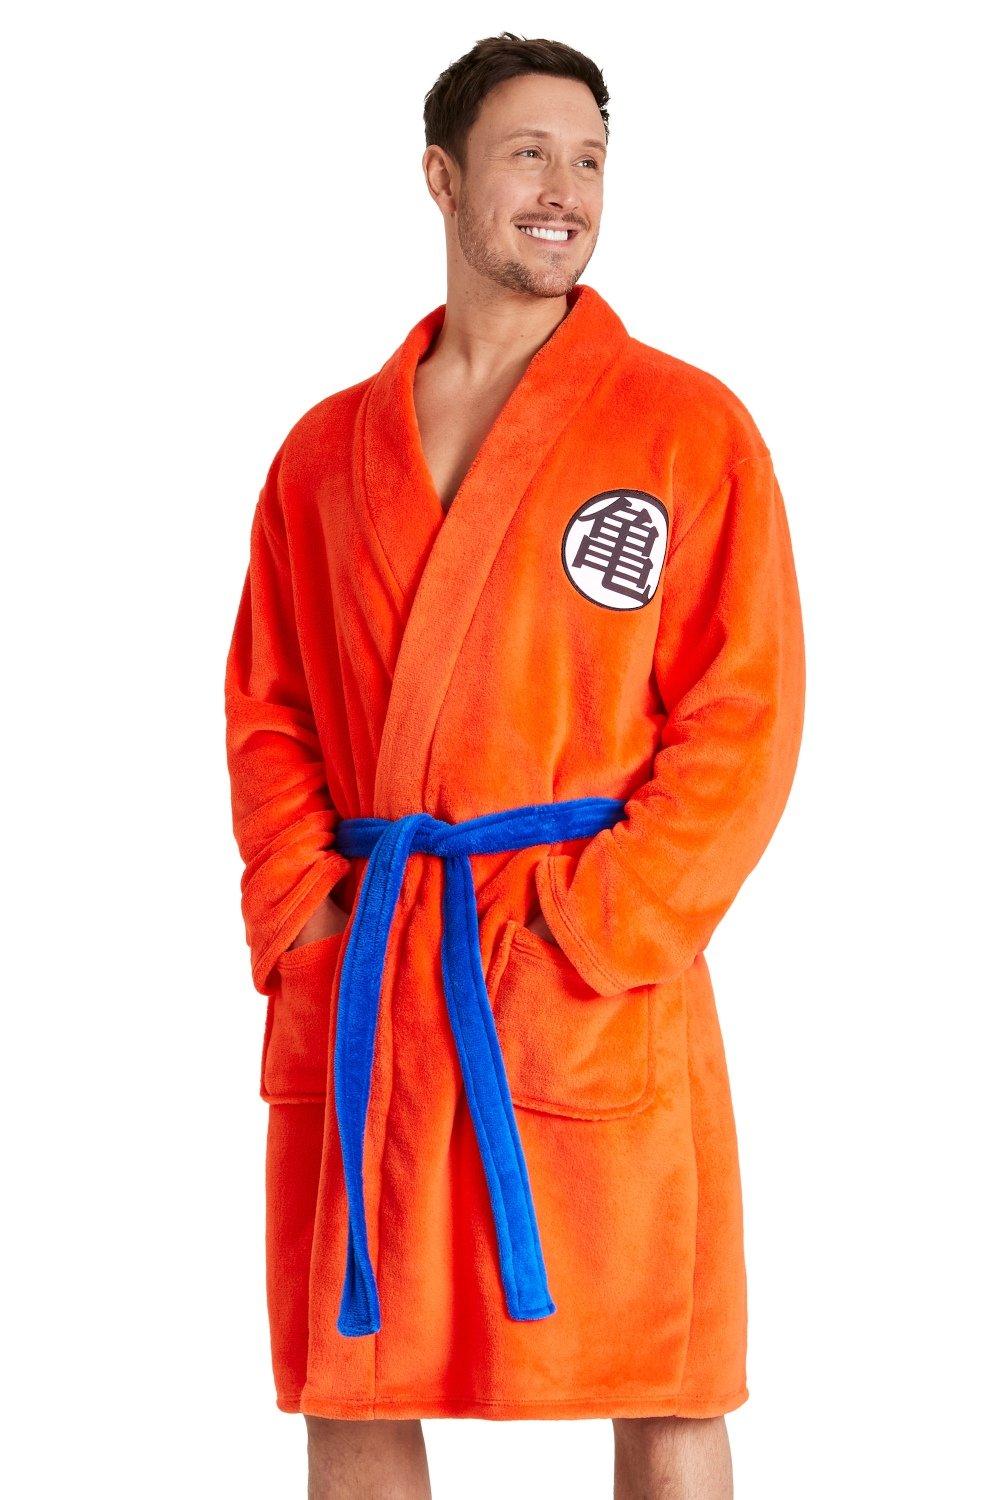 Пышный халат с капюшоном Dragon Ball Z, оранжевый dragon ball xenoverse 2 [switch цифровая версия] eu цифровая версия